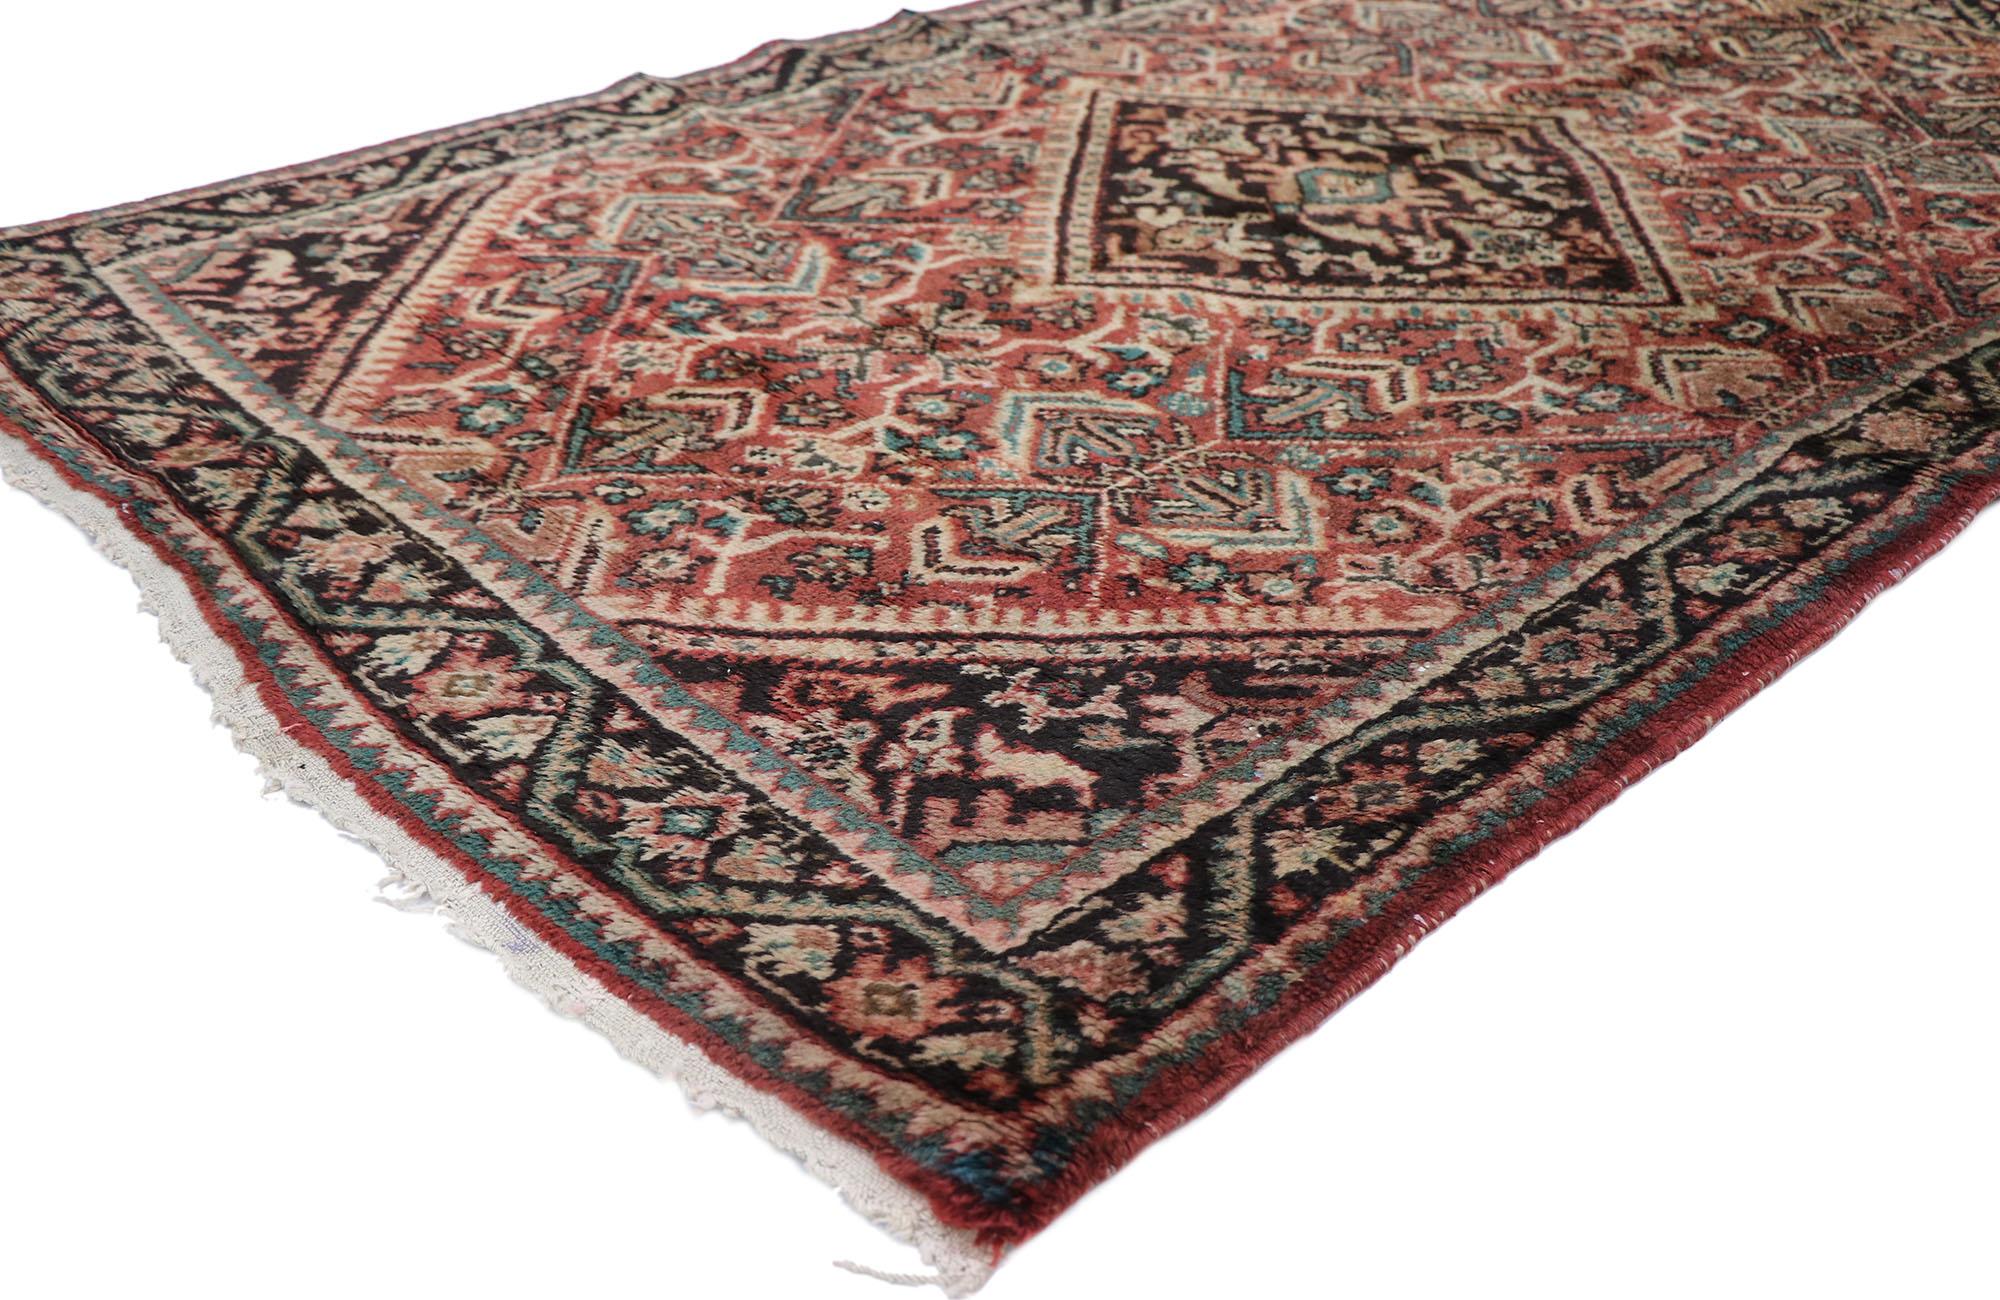 77688 Vieux tapis persan Mahal avec style rustique et moderne 04'00 x 06'04. D'une beauté sans effort et d'une sensibilité rustique, ce tapis Persan Mahal vintage en laine nouée à la main donne une impression de vivacité et de légèreté avec son